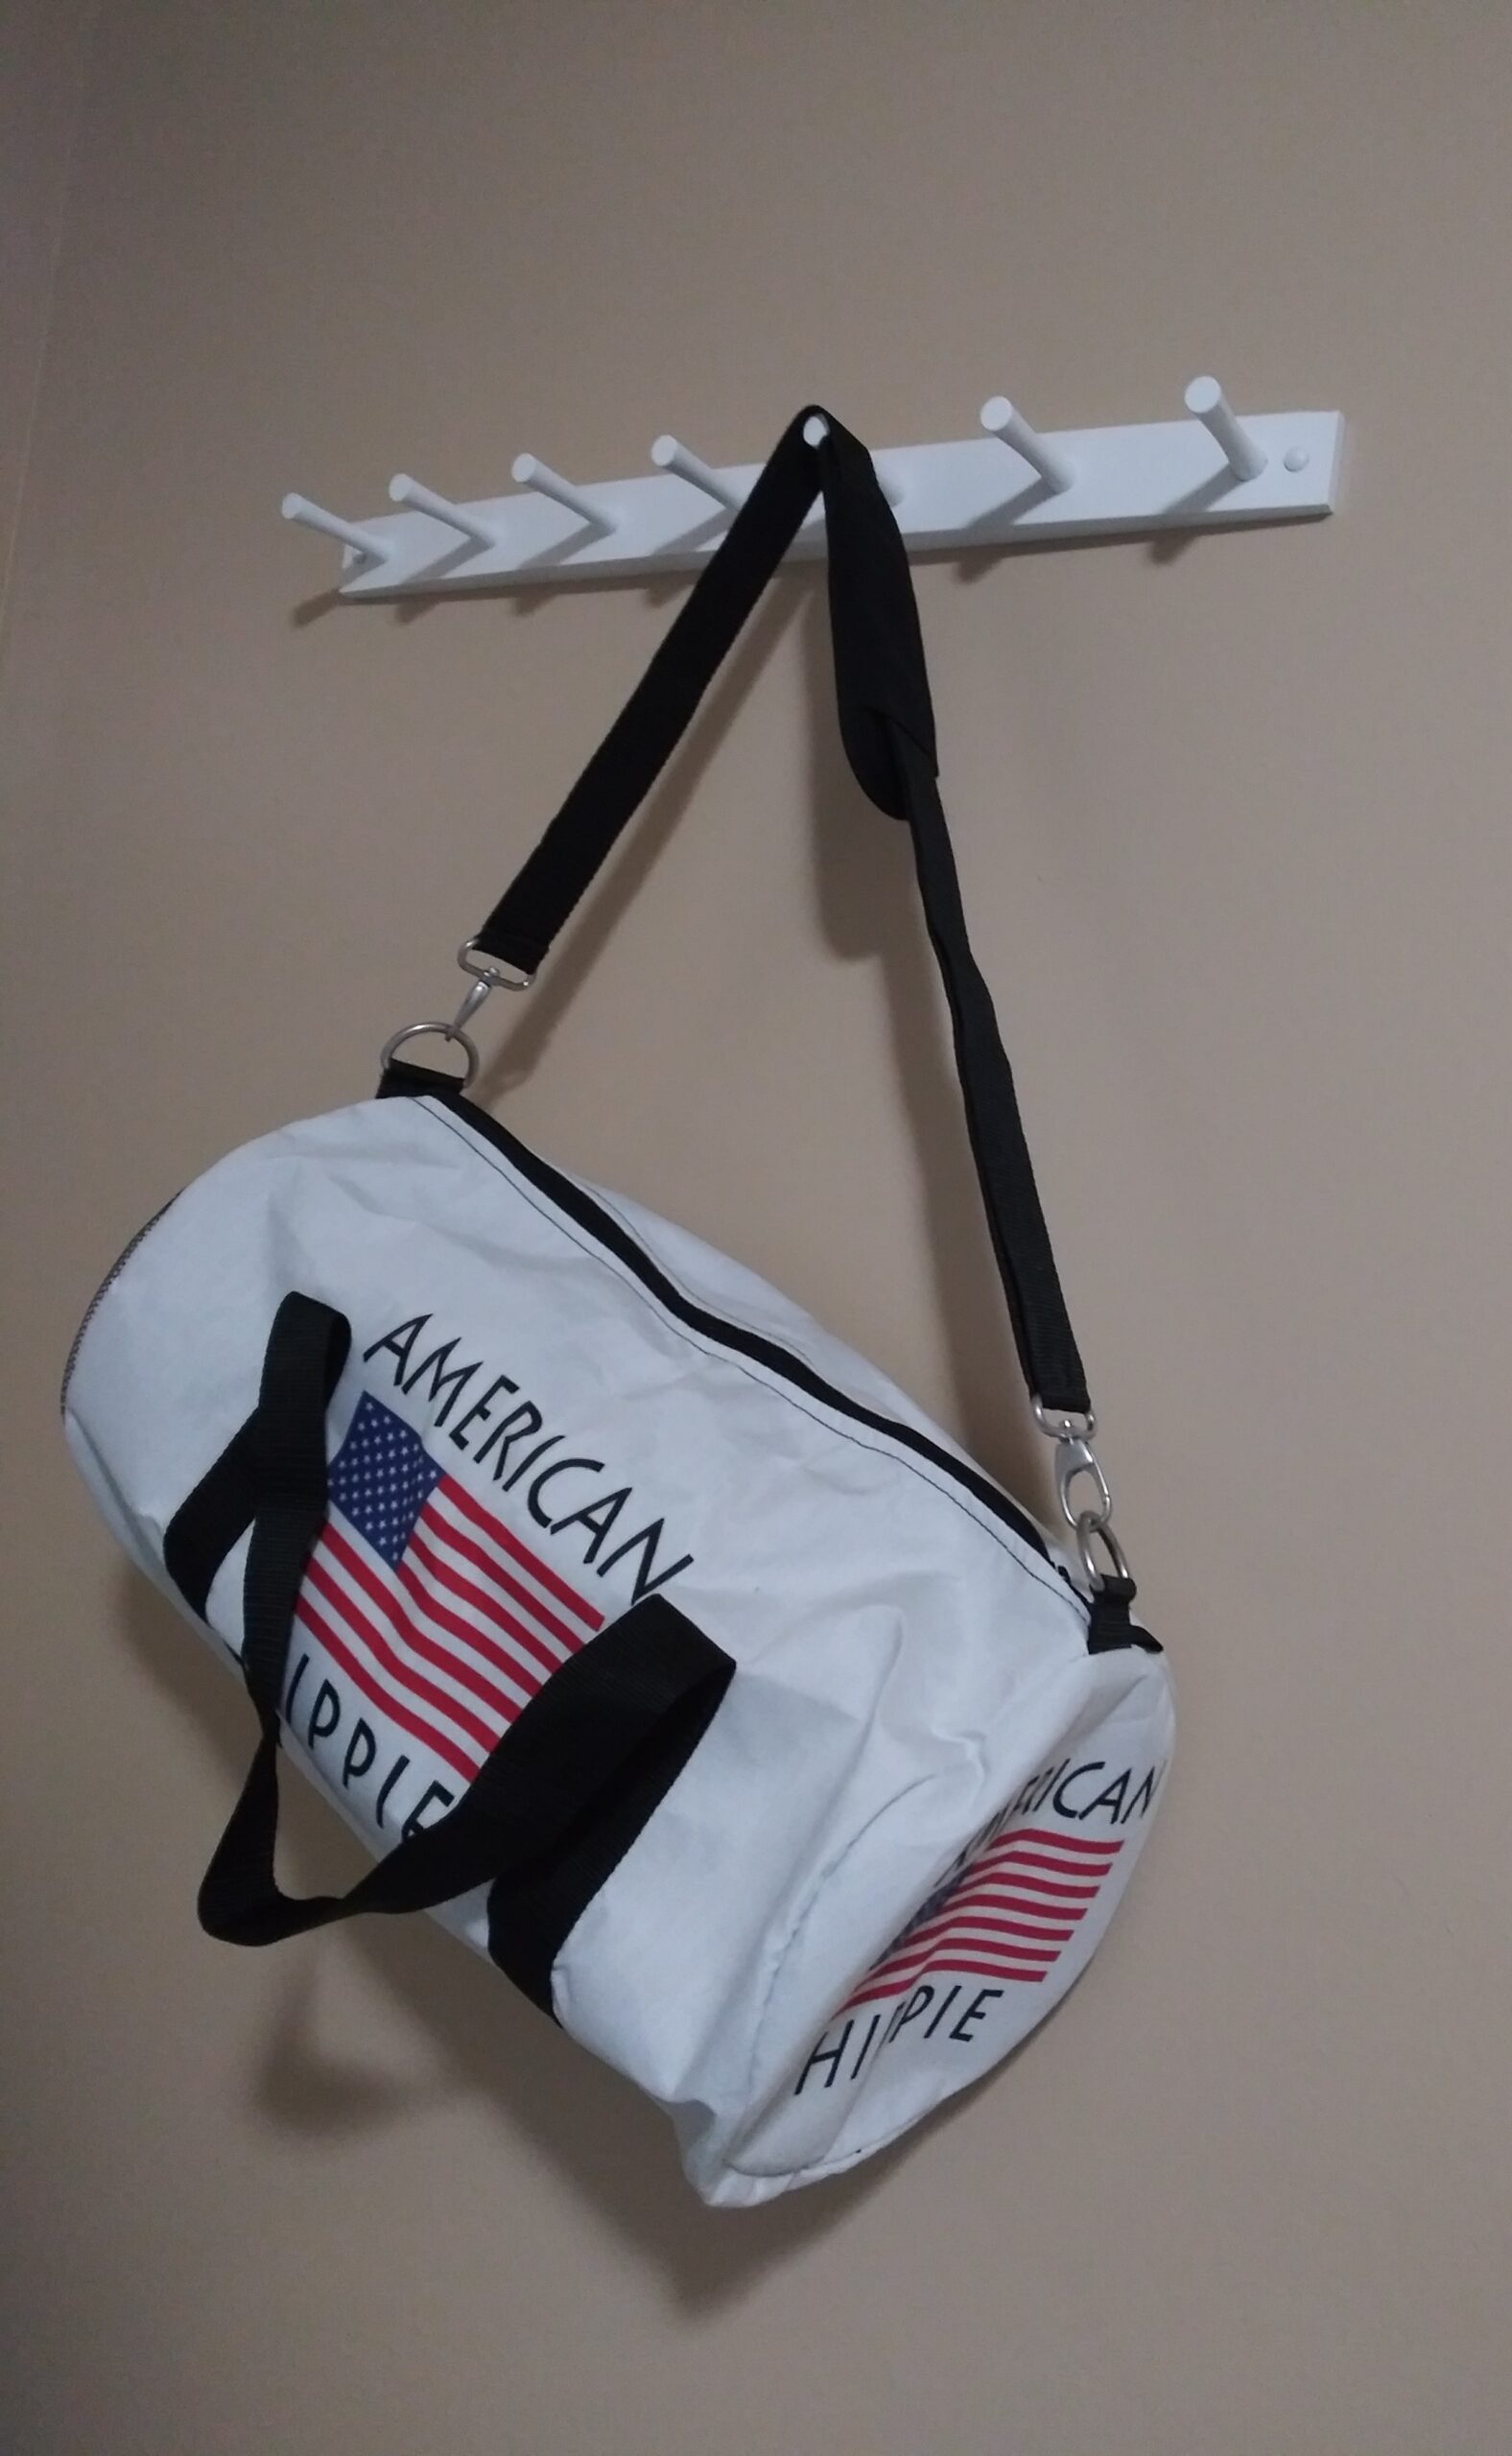 American Flag Hippie Duffel Bags Gift Ideas